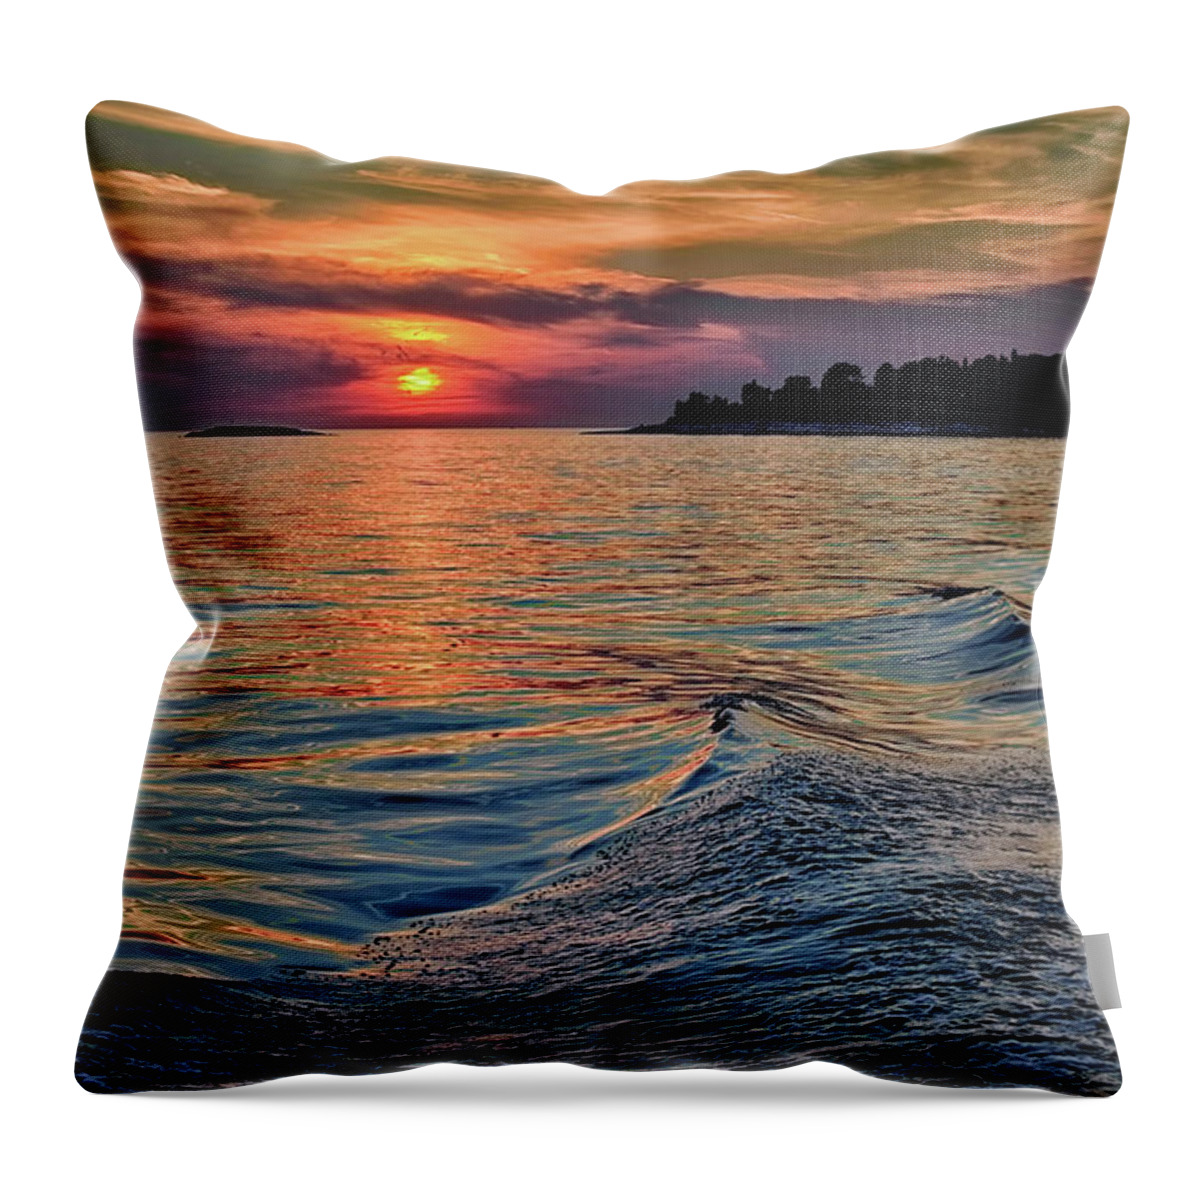 Top Artist Throw Pillow featuring the photograph Rovinj Sunset by Norman Gabitzsch